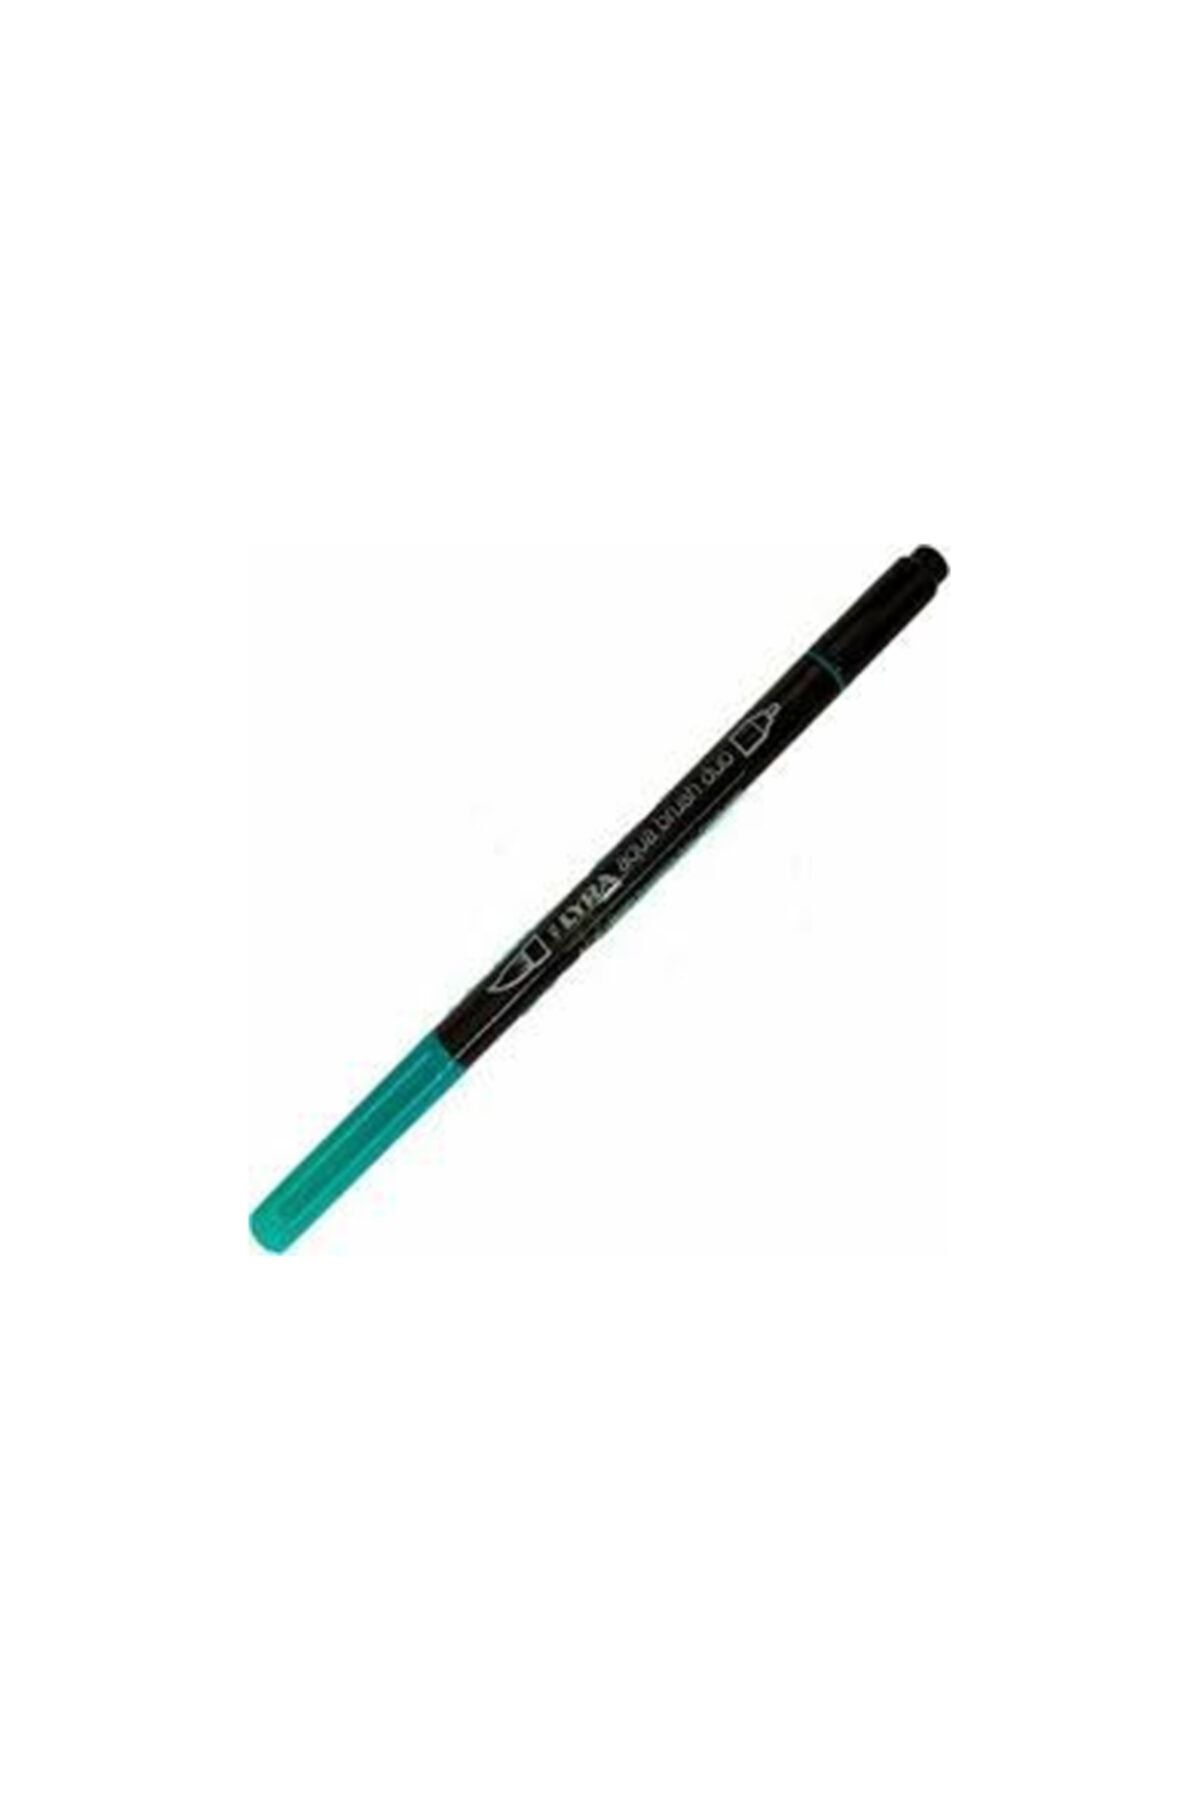 Lyra Aqua Brush Duo Marker - French Green L6520062